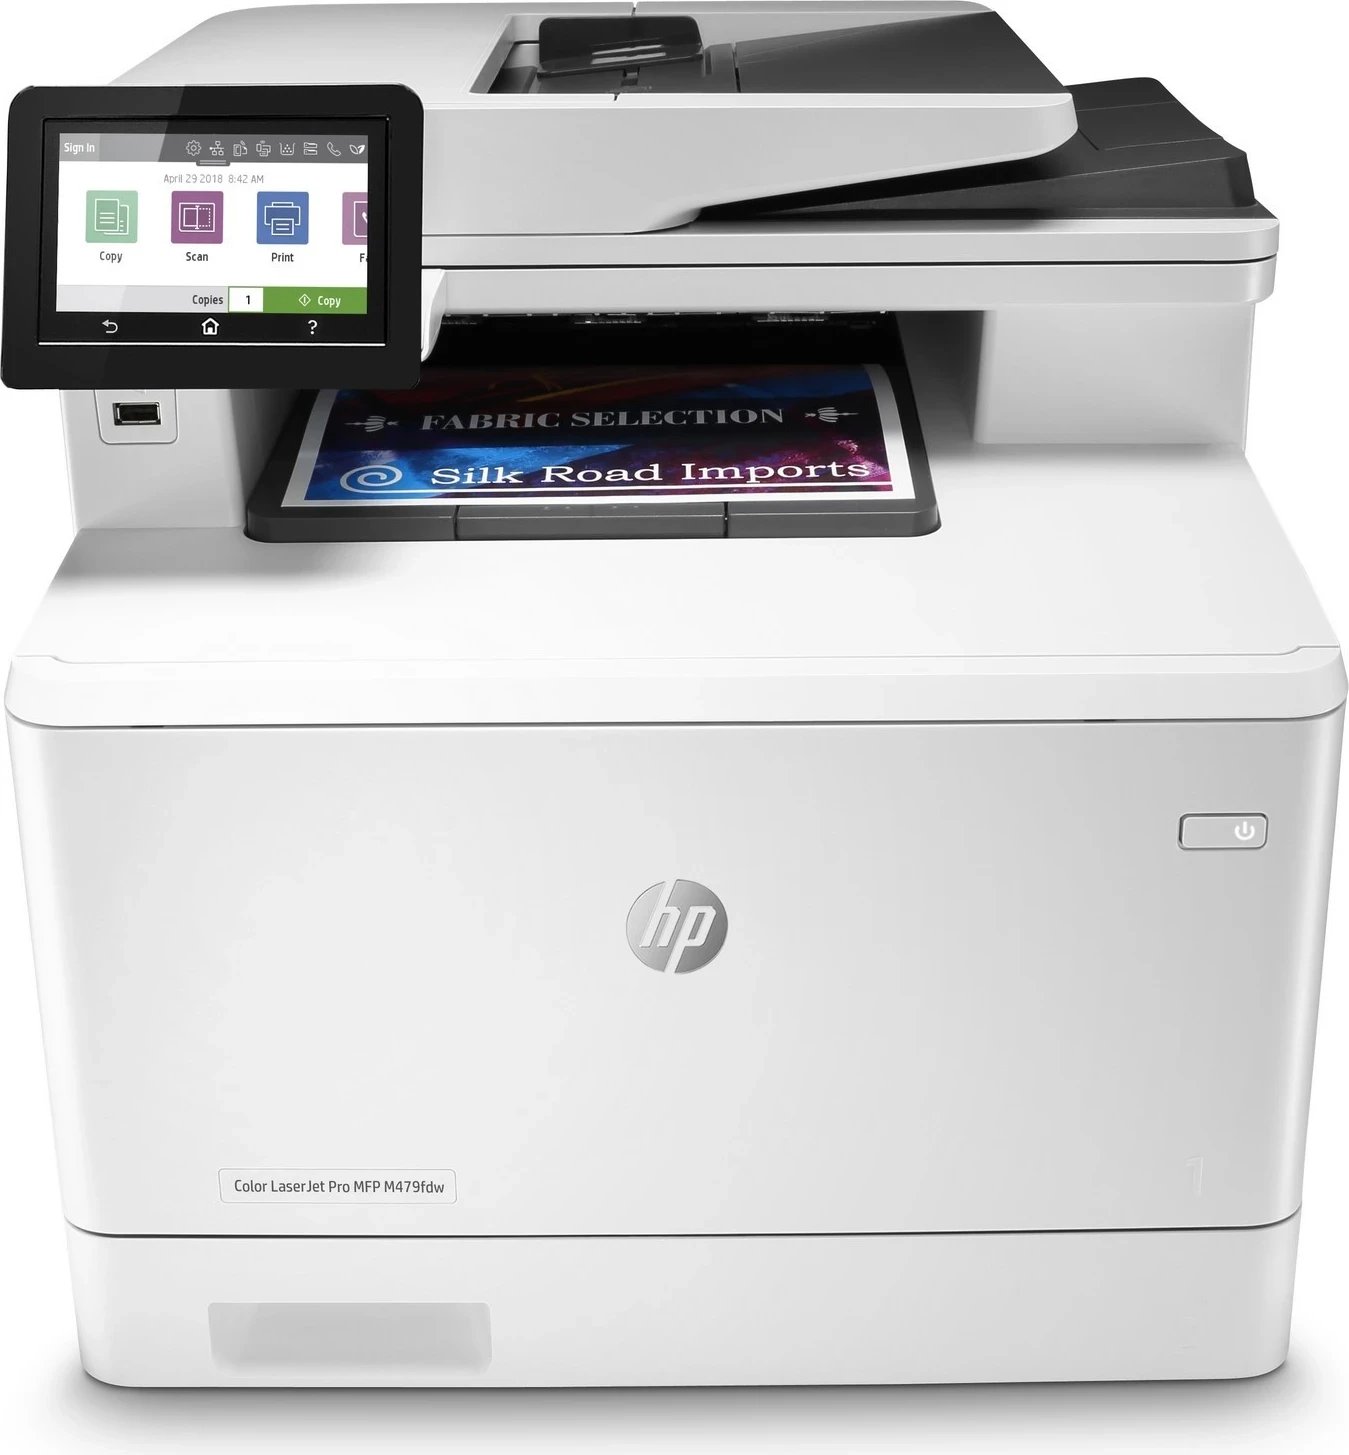 Printer HP Color LaserJet Pro, Fax Duplex, Wi-Fi, i bardhë